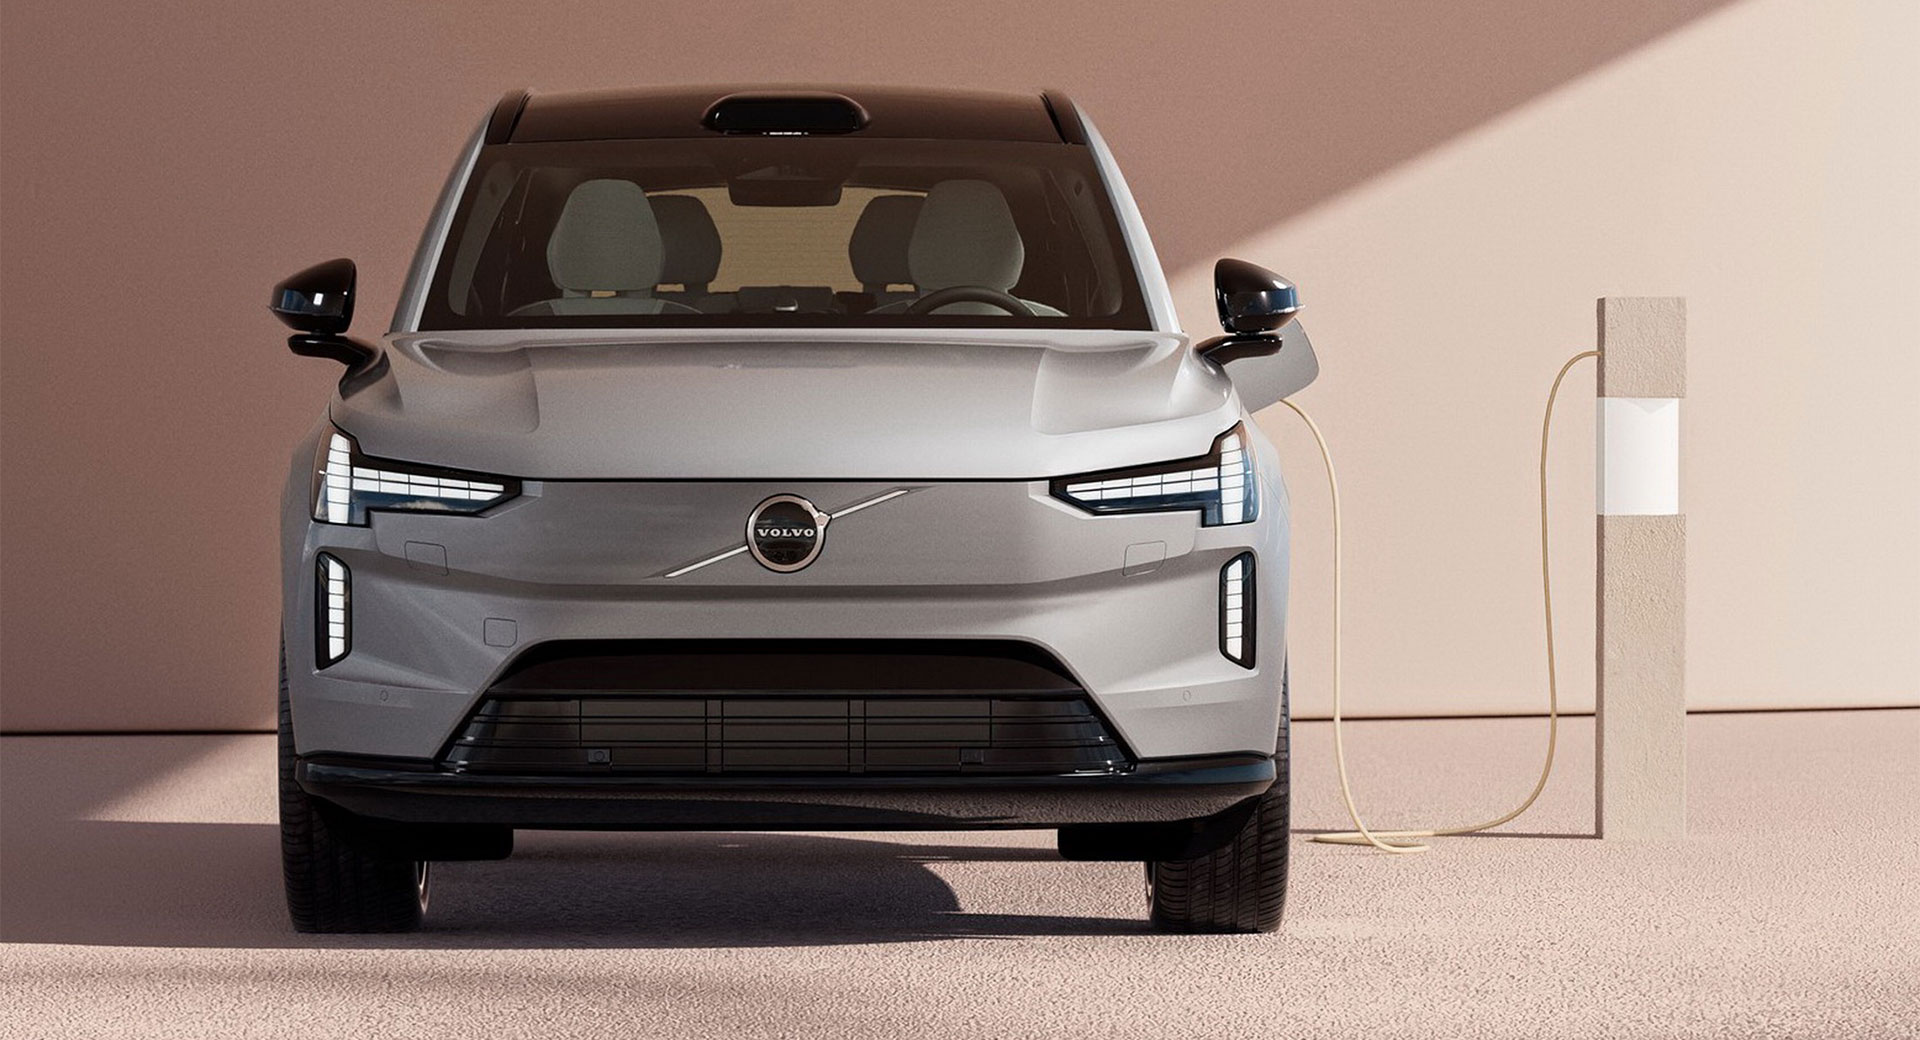 Volvo s’attend à ce que ses véhicules électriques atteignent la parité des prix avec les modèles ICE d’ici 2025